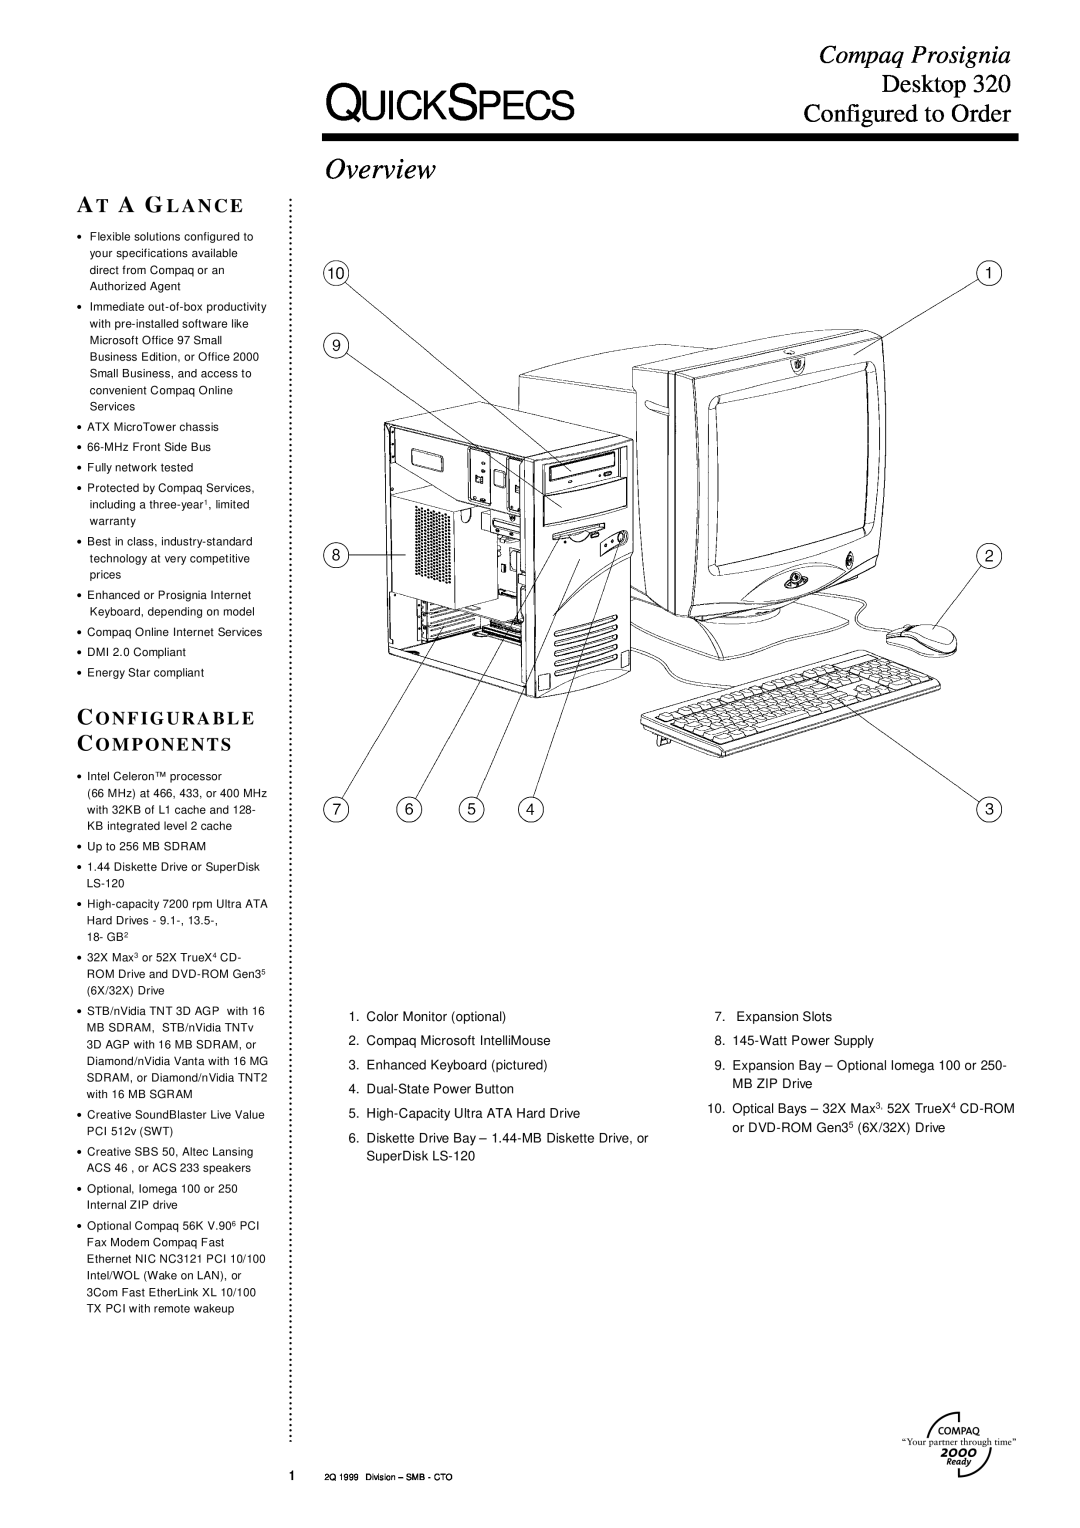 Compaq 320 specifications Quickspecs, Overview, Compaq Prosignia, Desktop, Configured to Order, A T A G L A N C E 